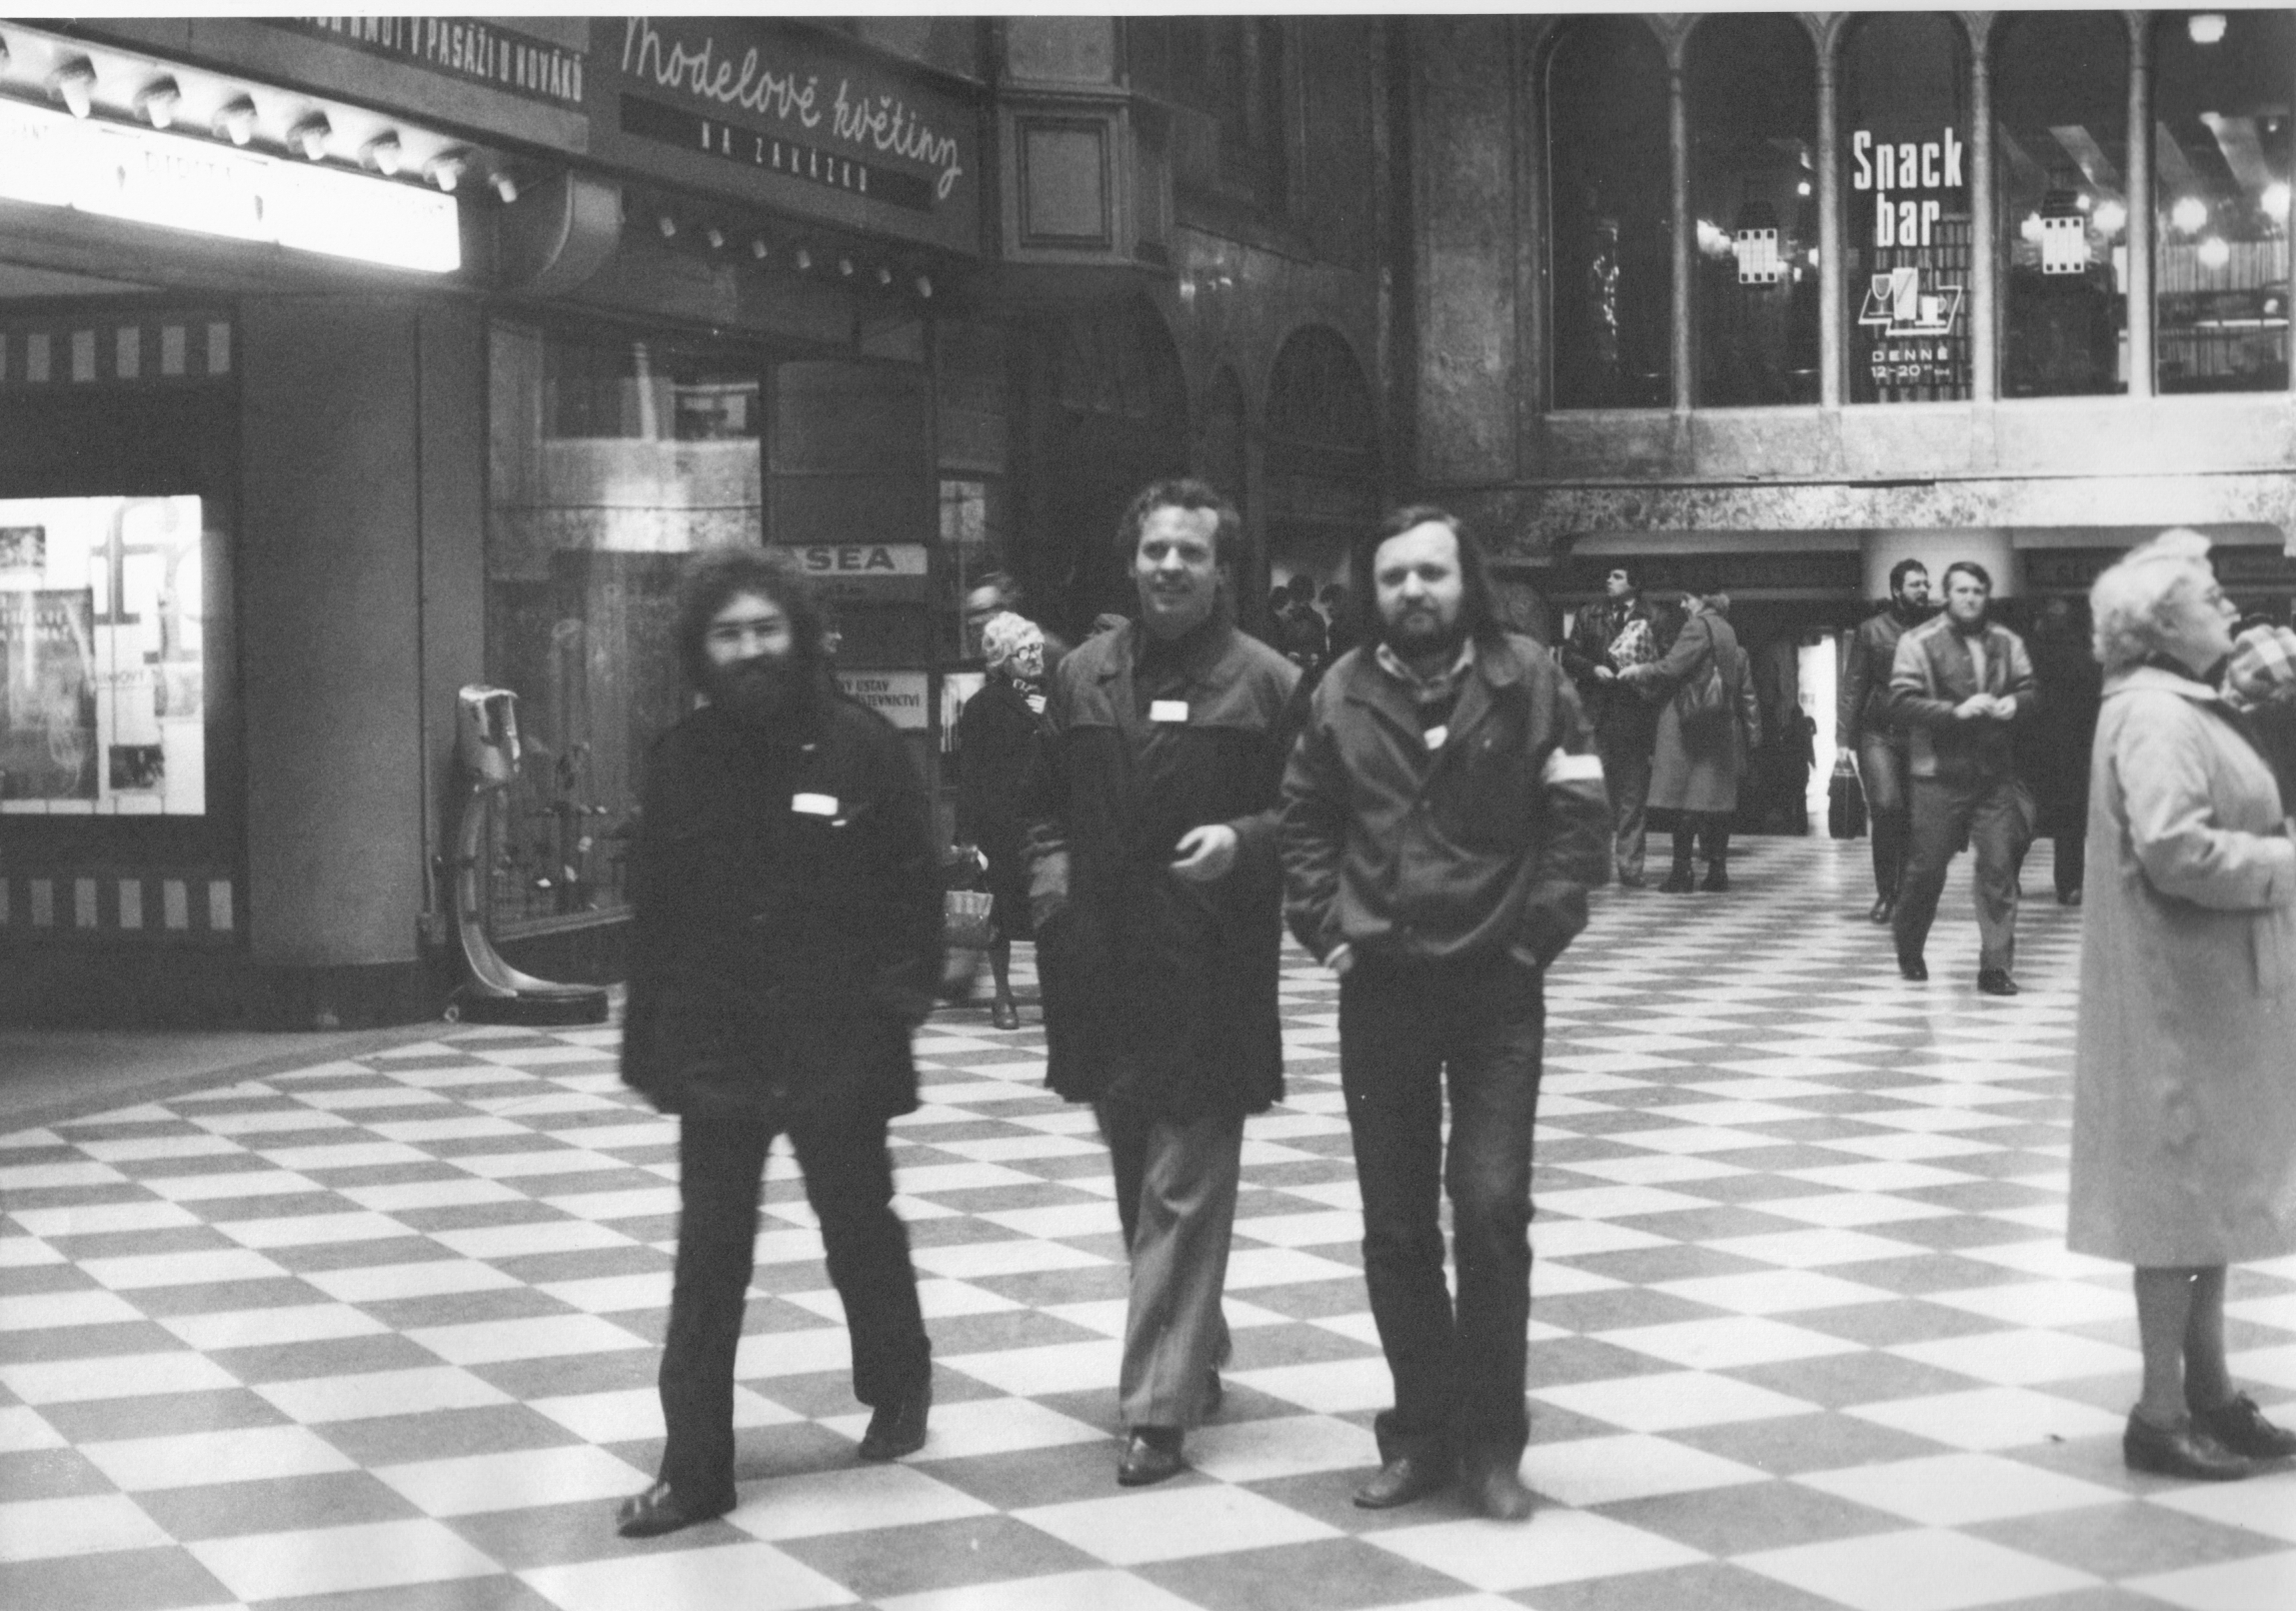 Joska Skalník, Karel Srp, and Vladimír Kouřil (from left to right) in 1982